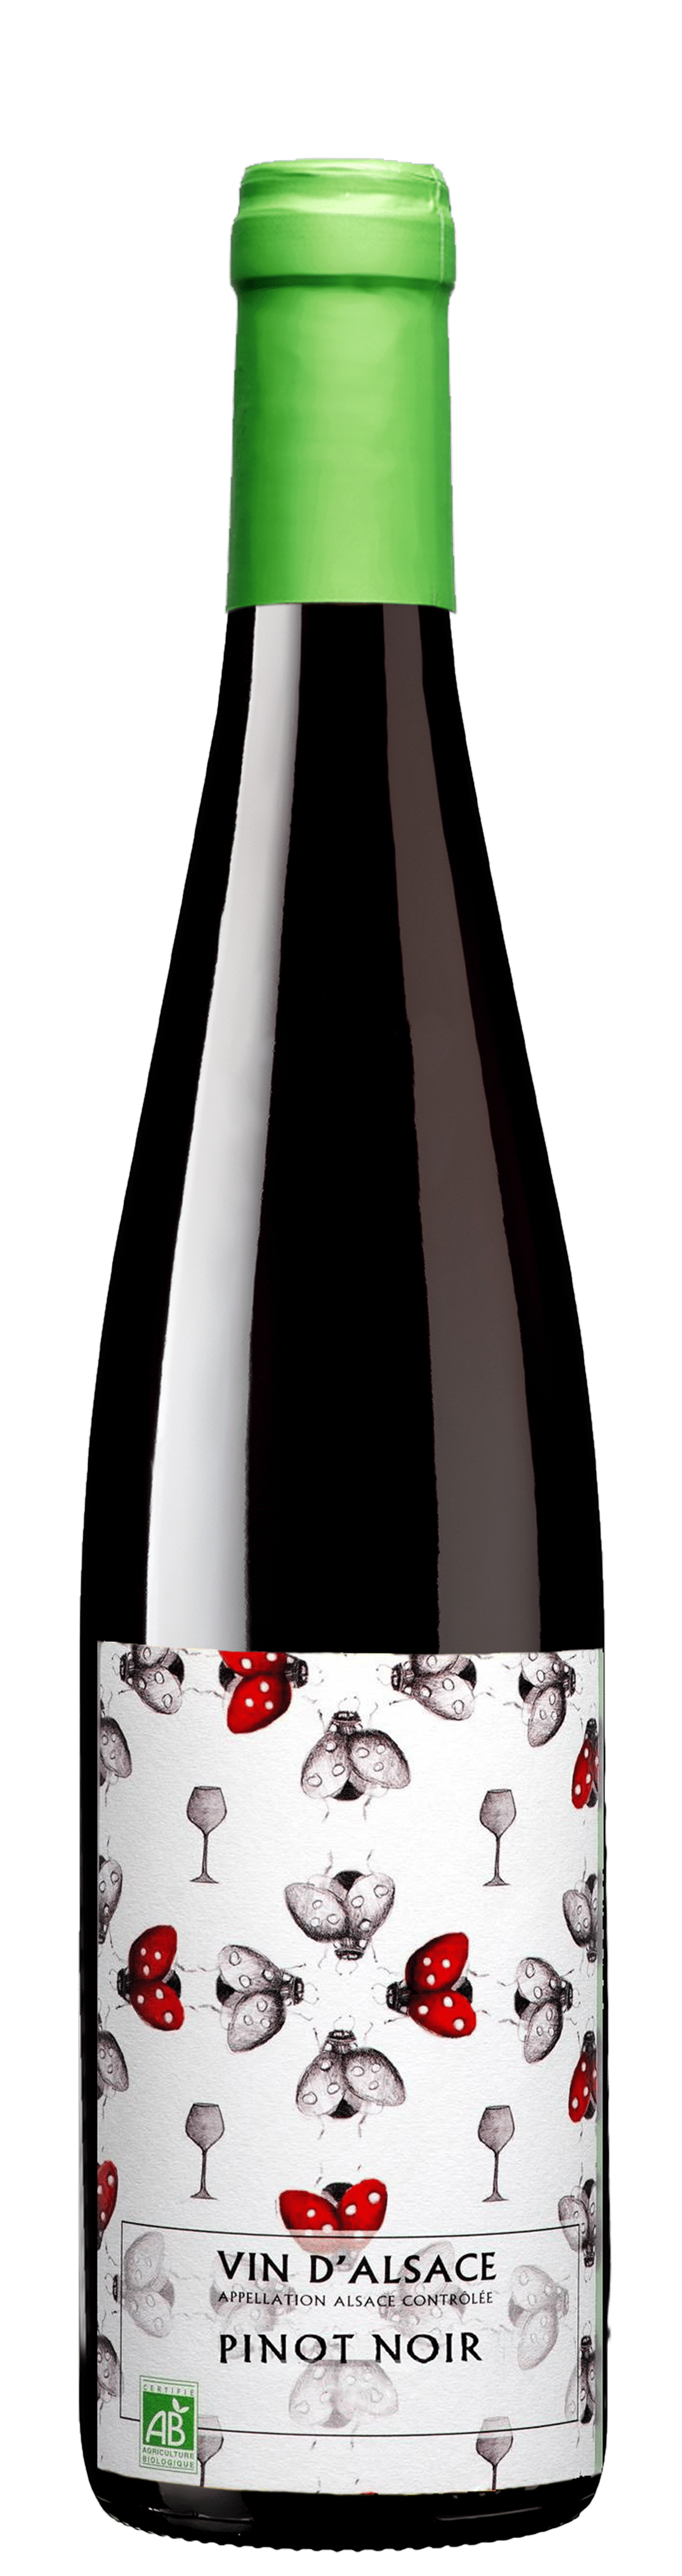 Bottle of organic Pinot Noir Cave de Ribeauvillé